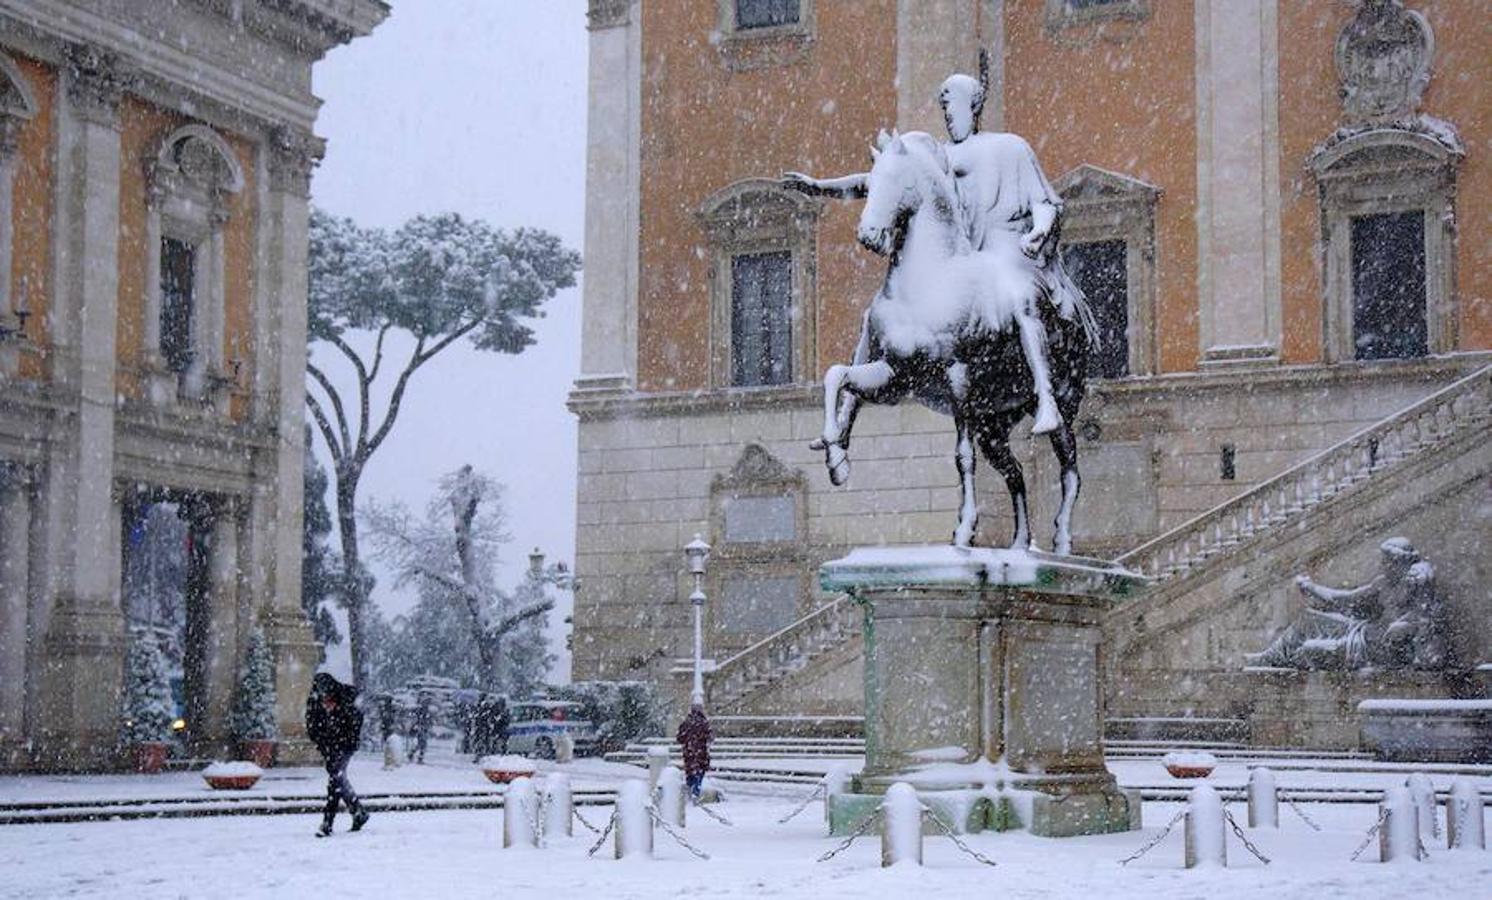 La capital italiana amanece teñida de blanco, algo que no ocurría desde hace seis años